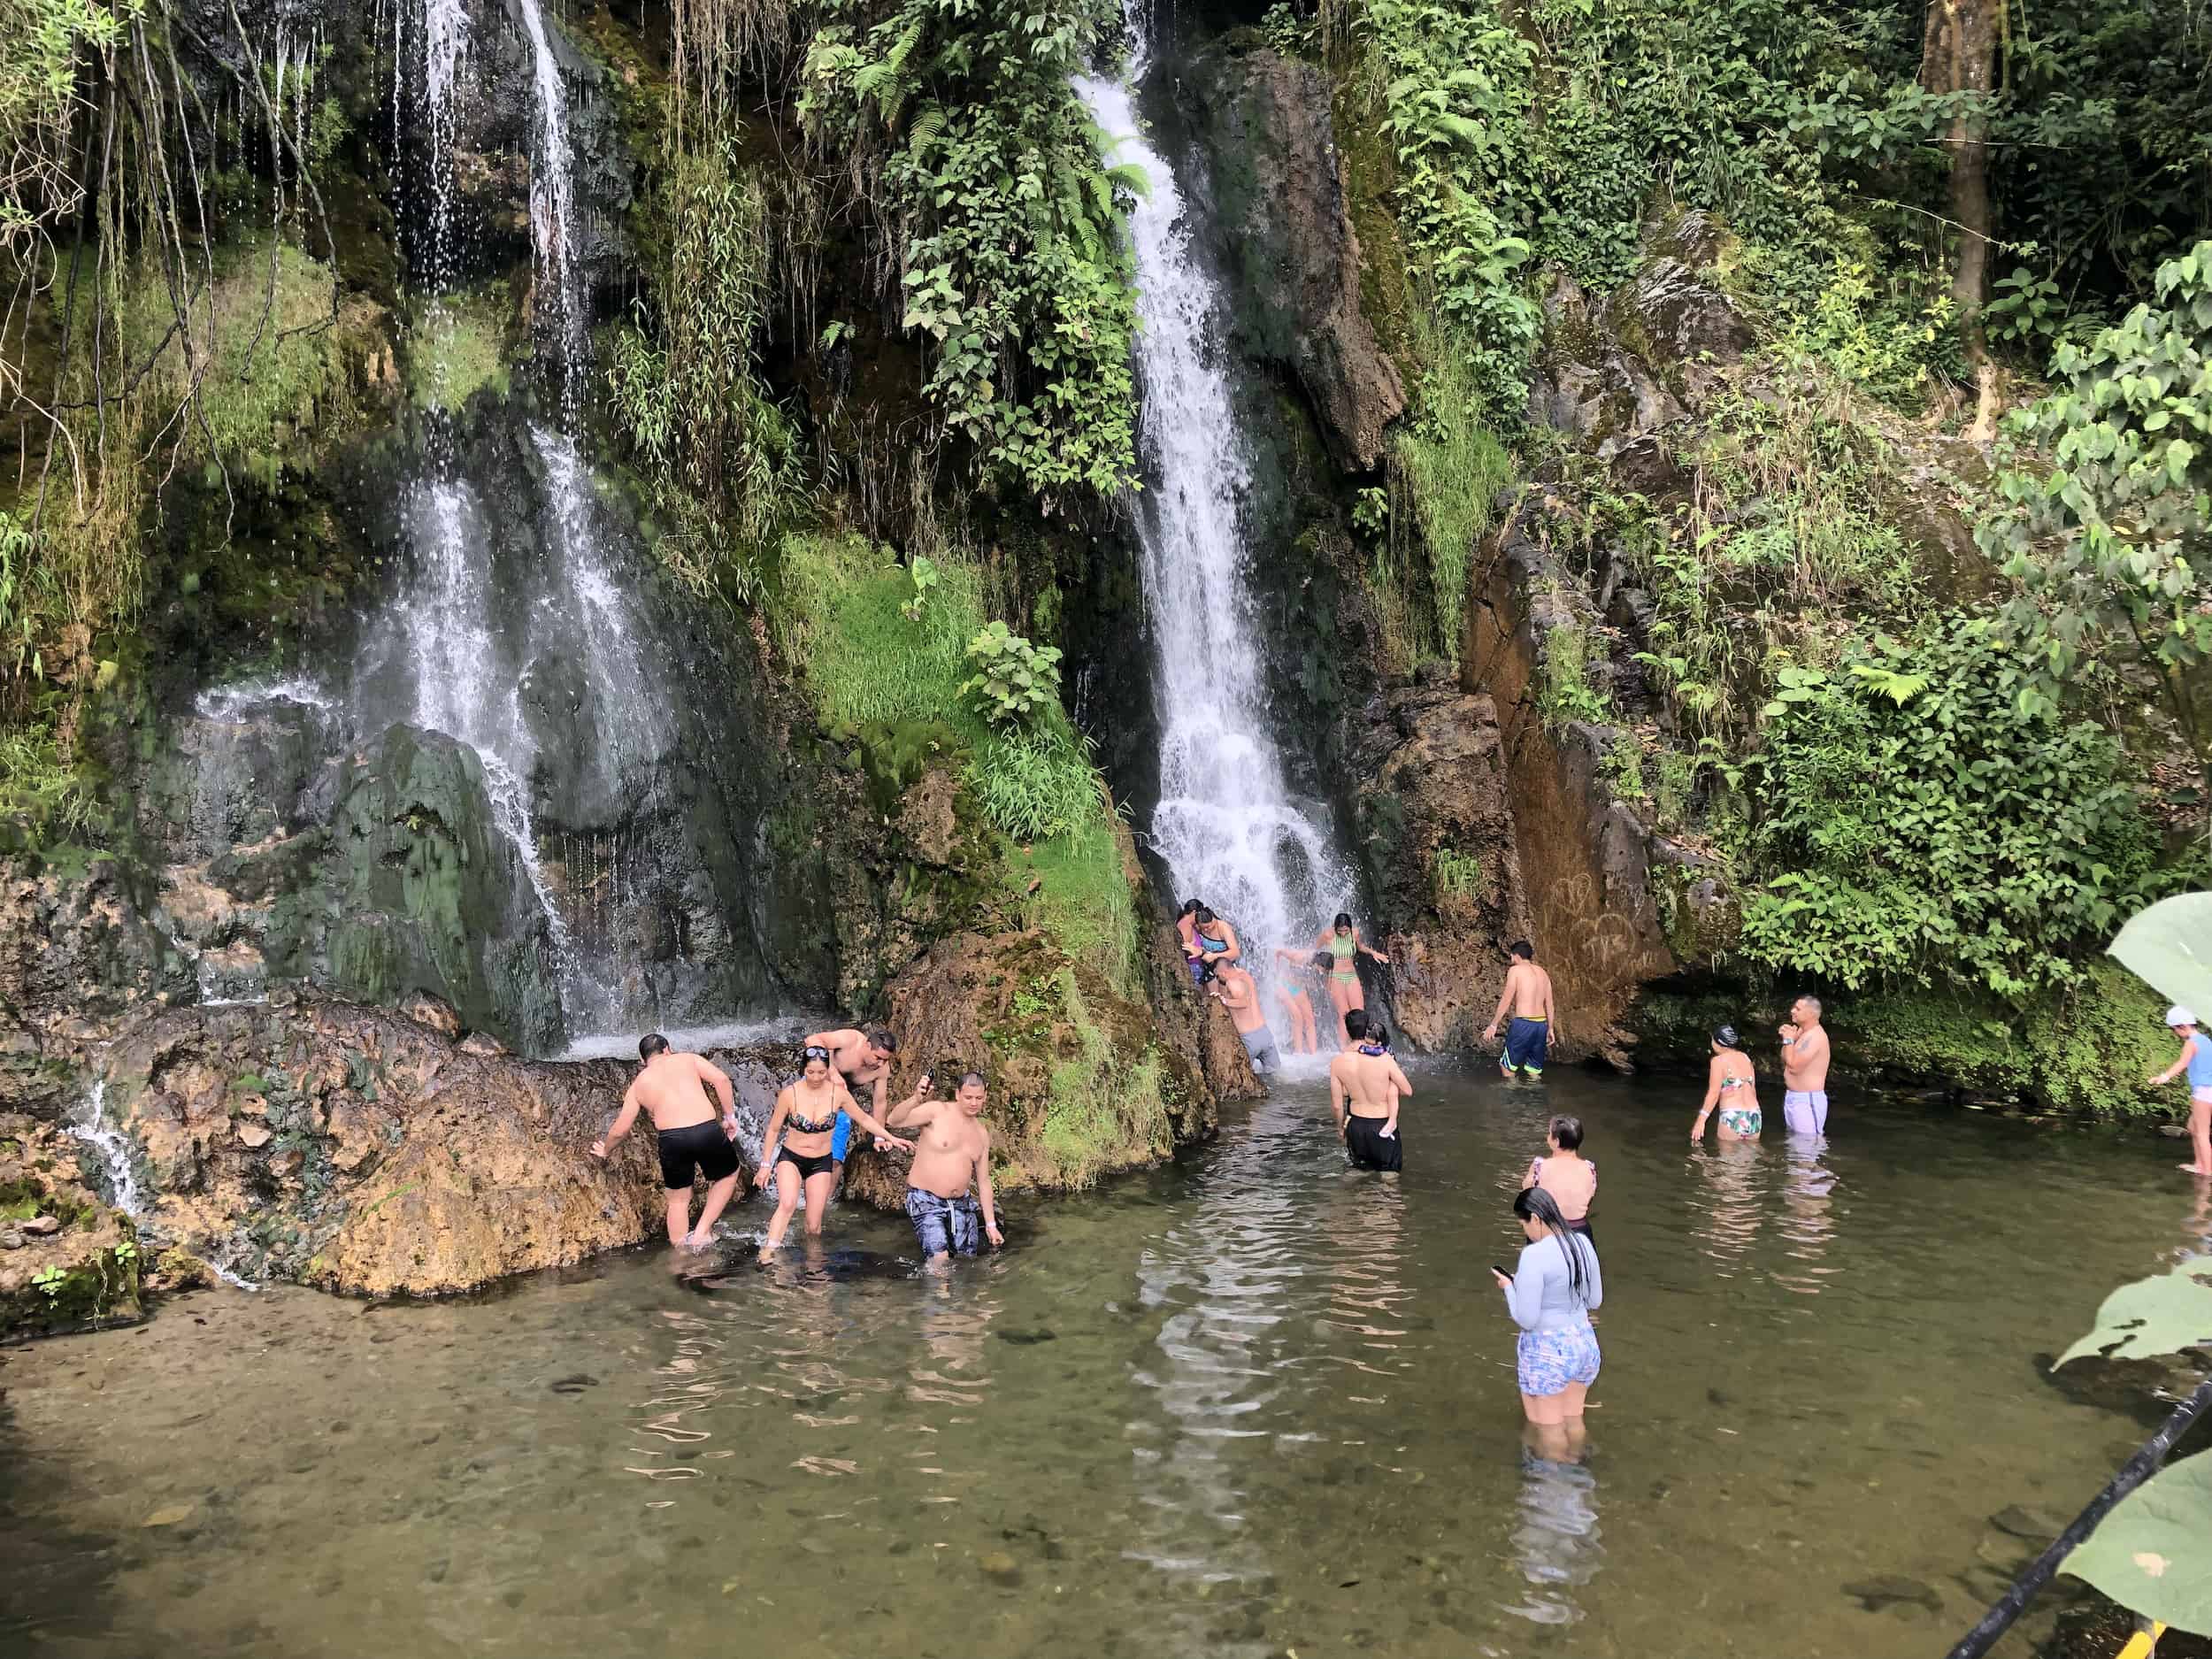 Visitors in the waterfall plunge pool at Balneario de Santa Rosa